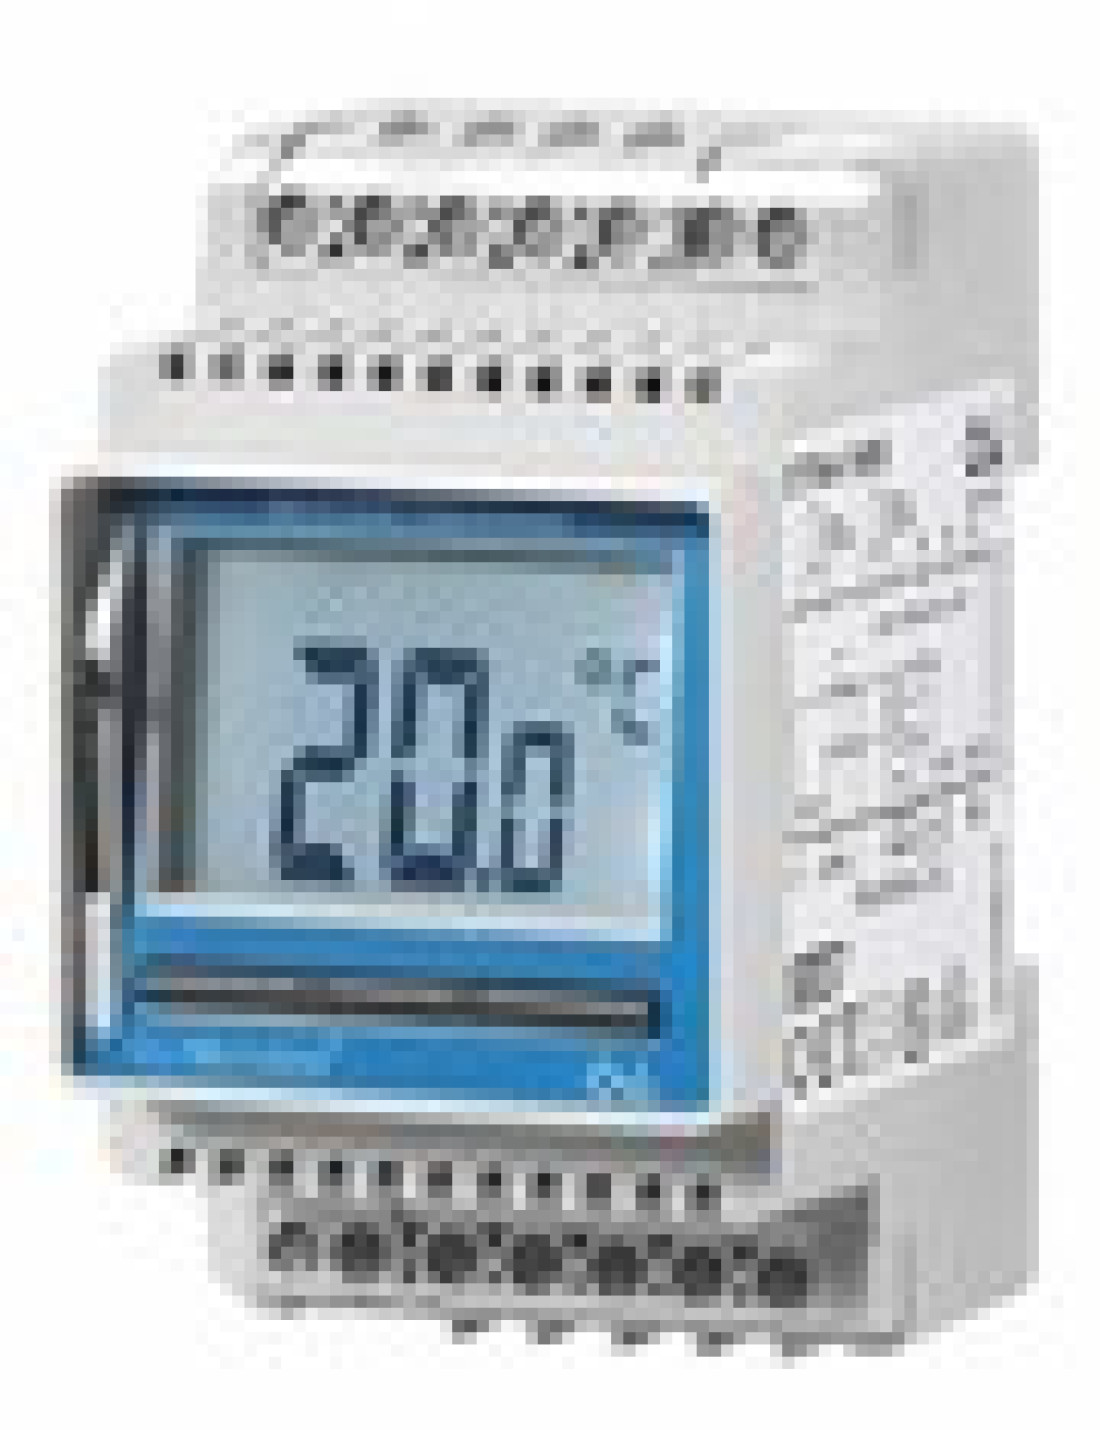 Uniwersalny termostat elektroniczny LTD4 firmy Luxbud